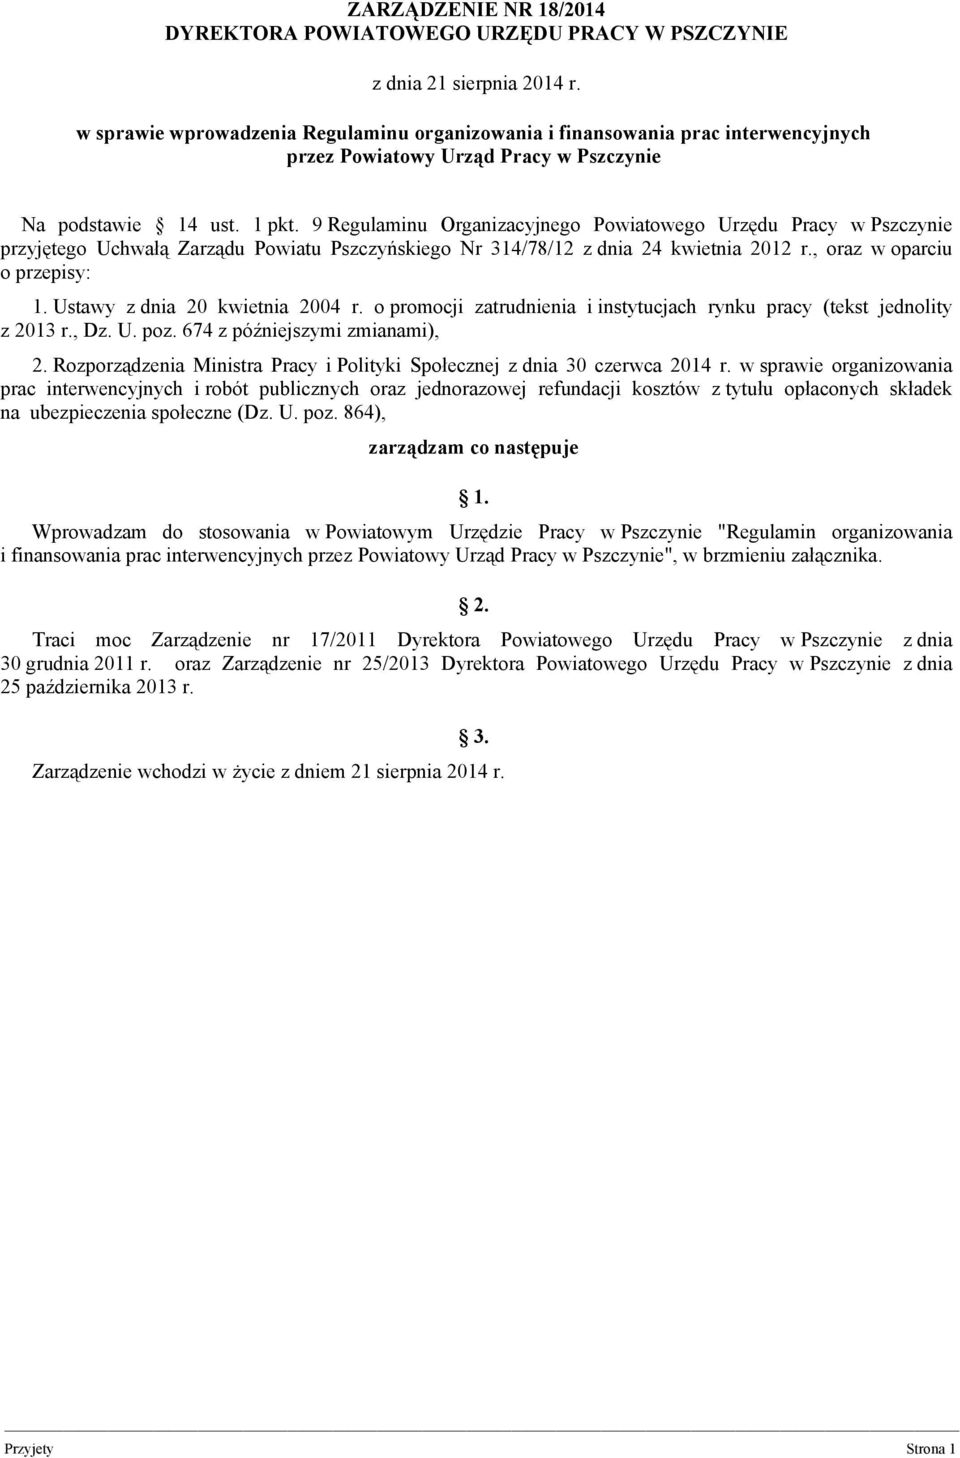 9 Regulaminu Organizacyjnego Powiatowego Urzędu Pracy w Pszczynie przyjętego Uchwałą Zarządu Powiatu Pszczyńskiego Nr 314/78/12 z dnia 24 kwietnia 2012 r., oraz w oparciu o przepisy: 1.